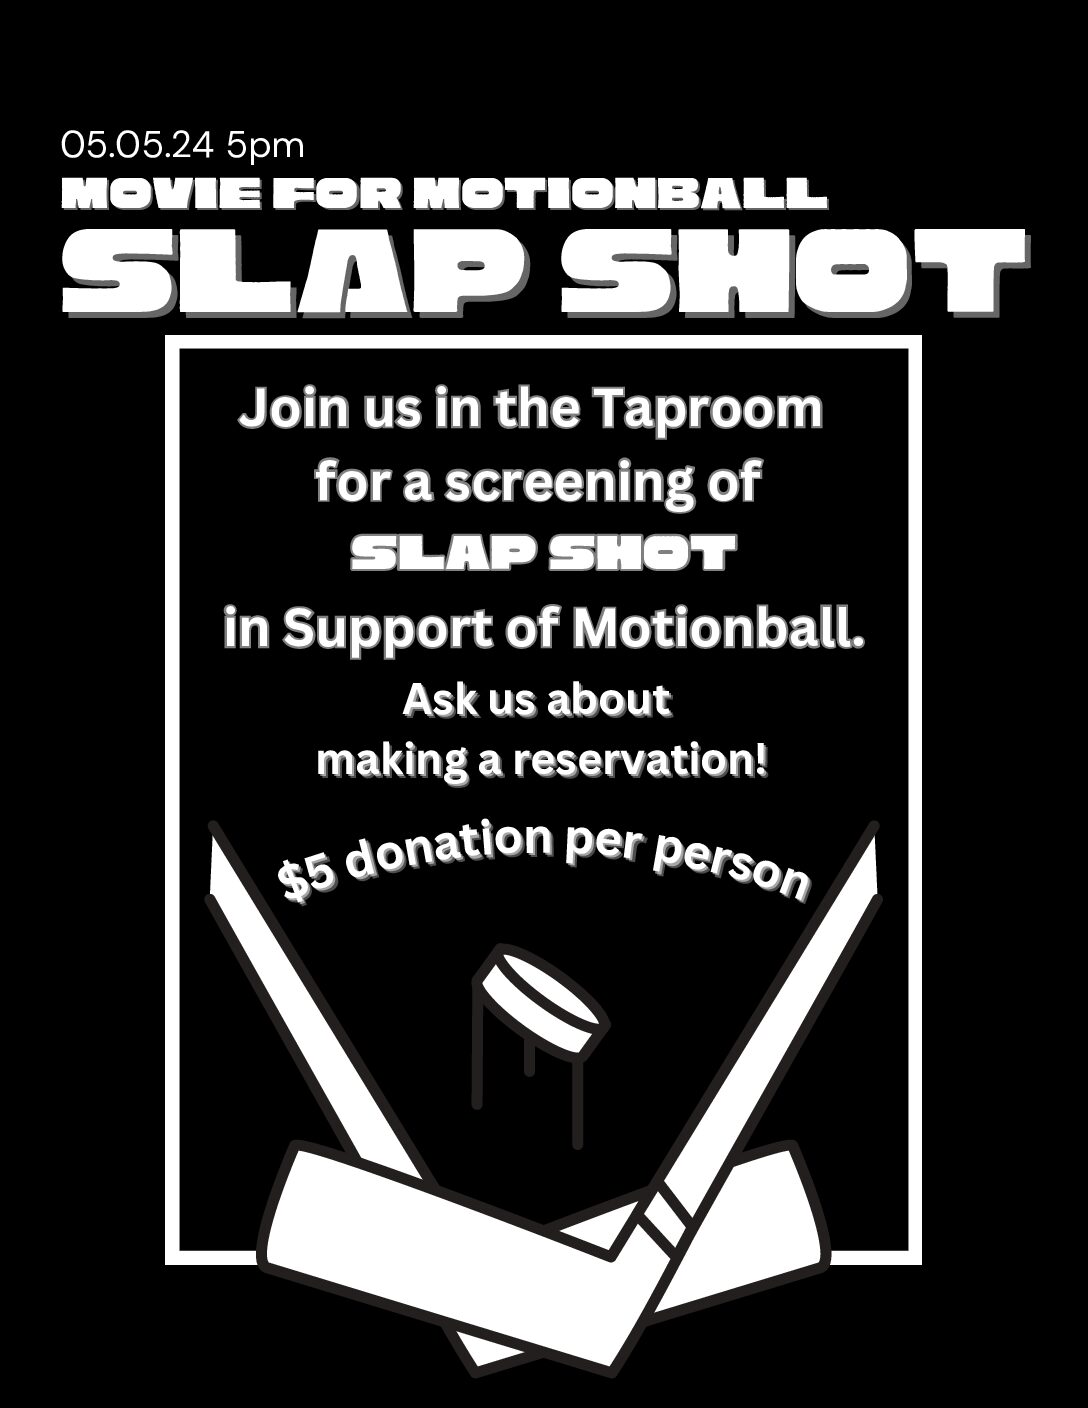 Movie For Motionball! SLAP SHOT